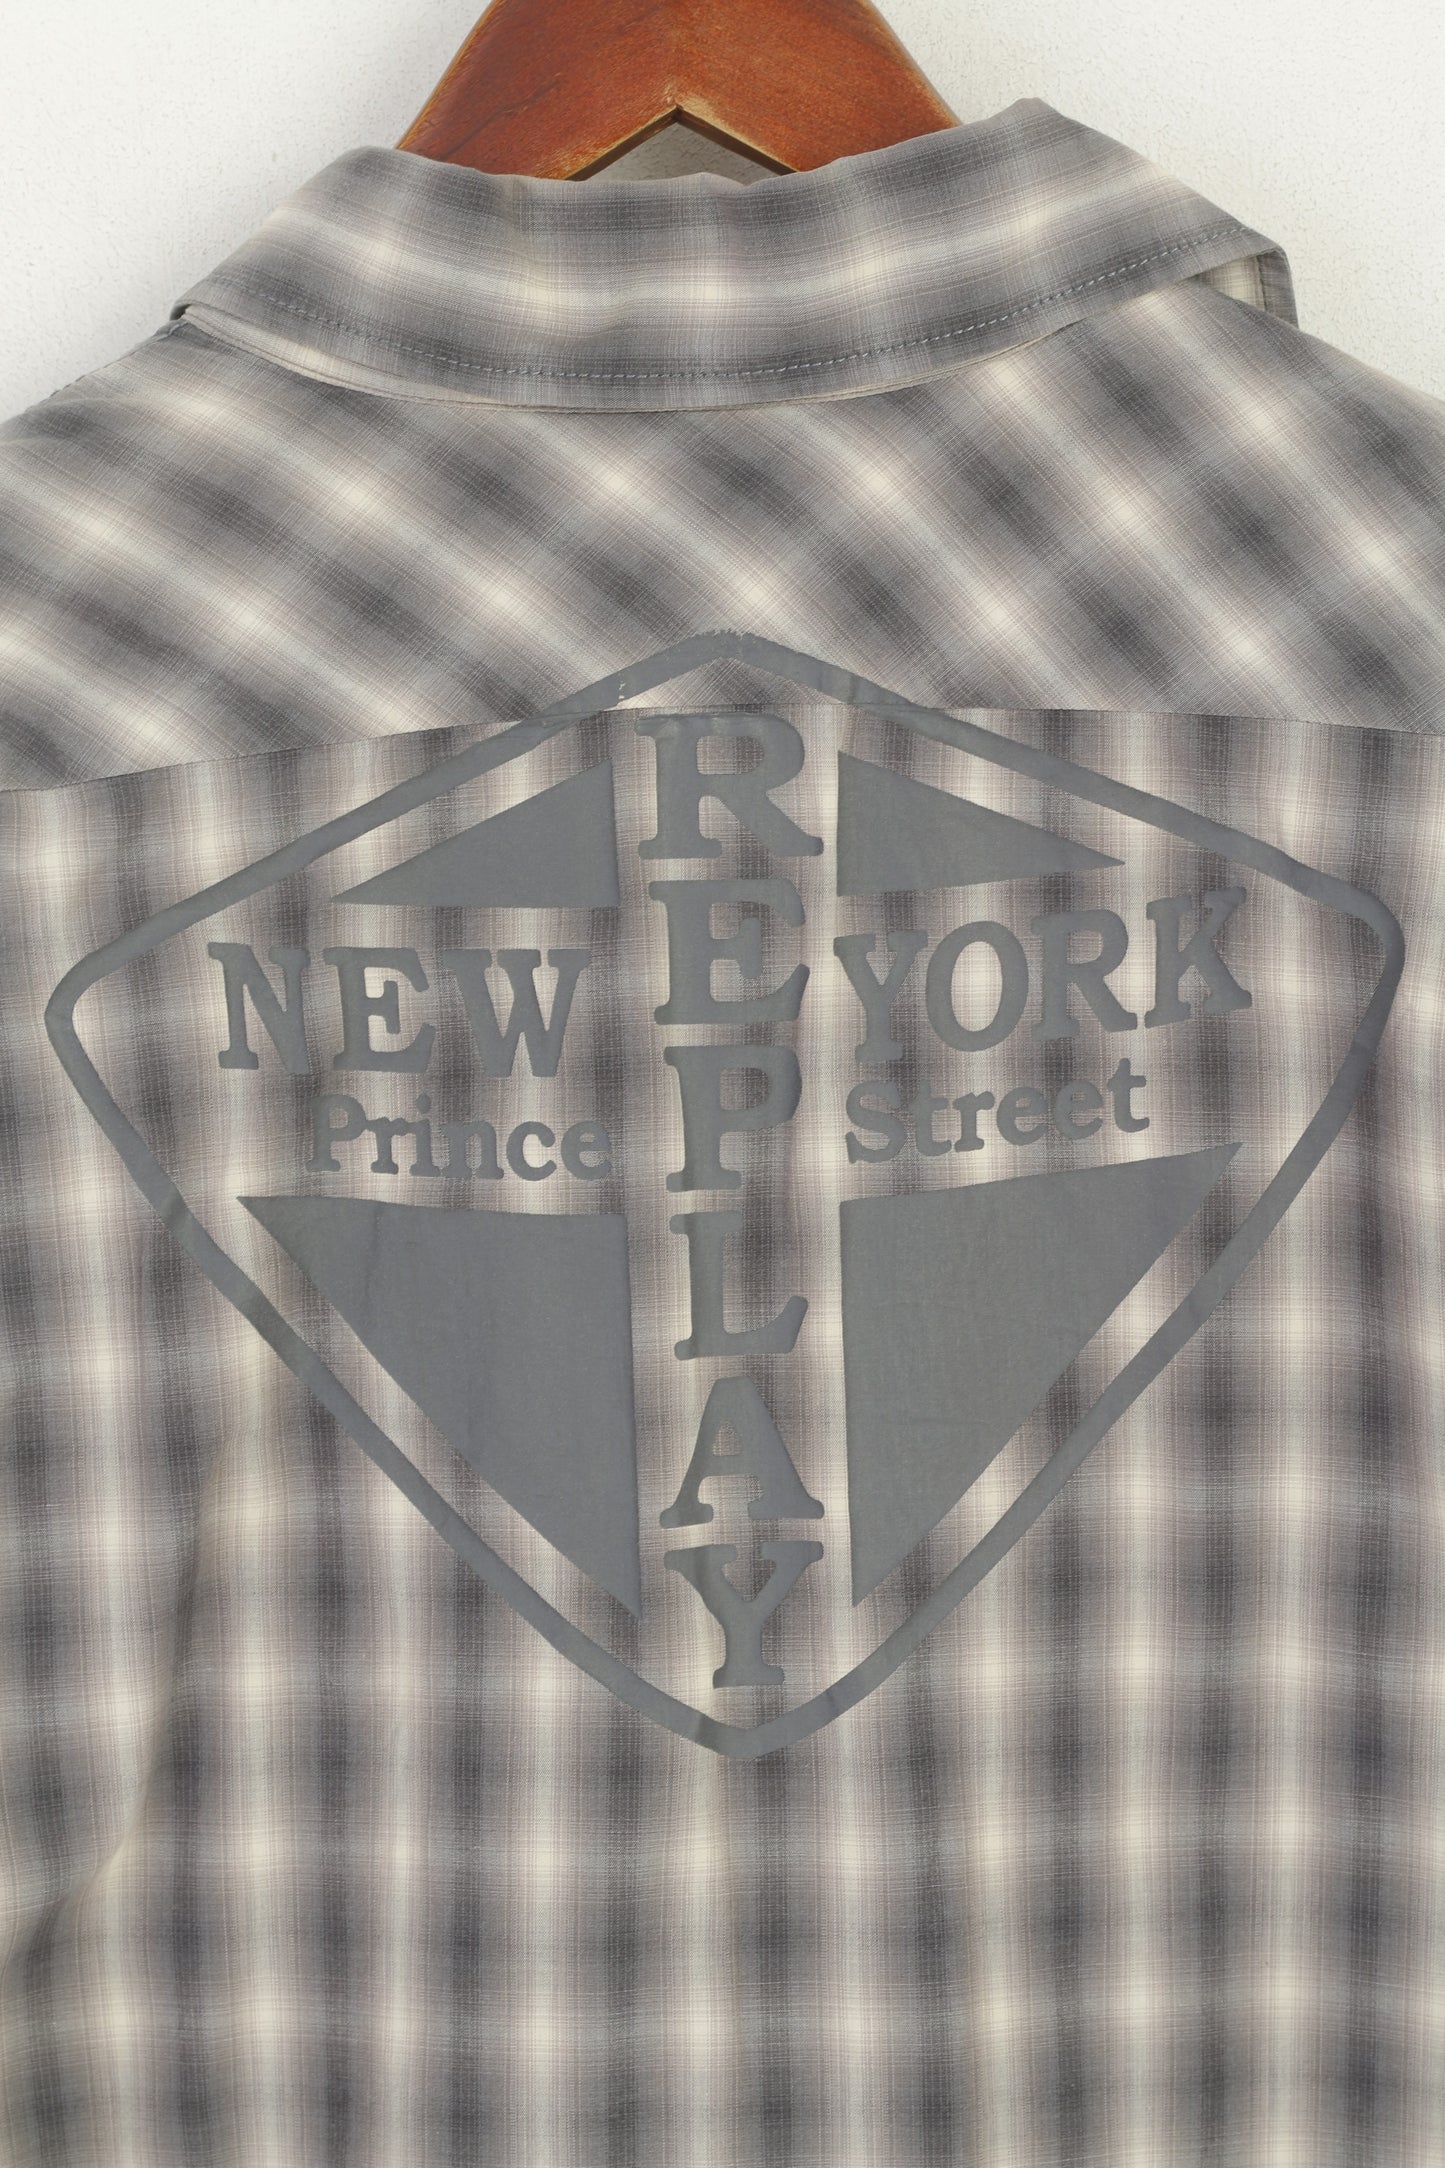 Replay Camicia casual da uomo L (M) Top in cotone a quadri grigi New York Prince Street